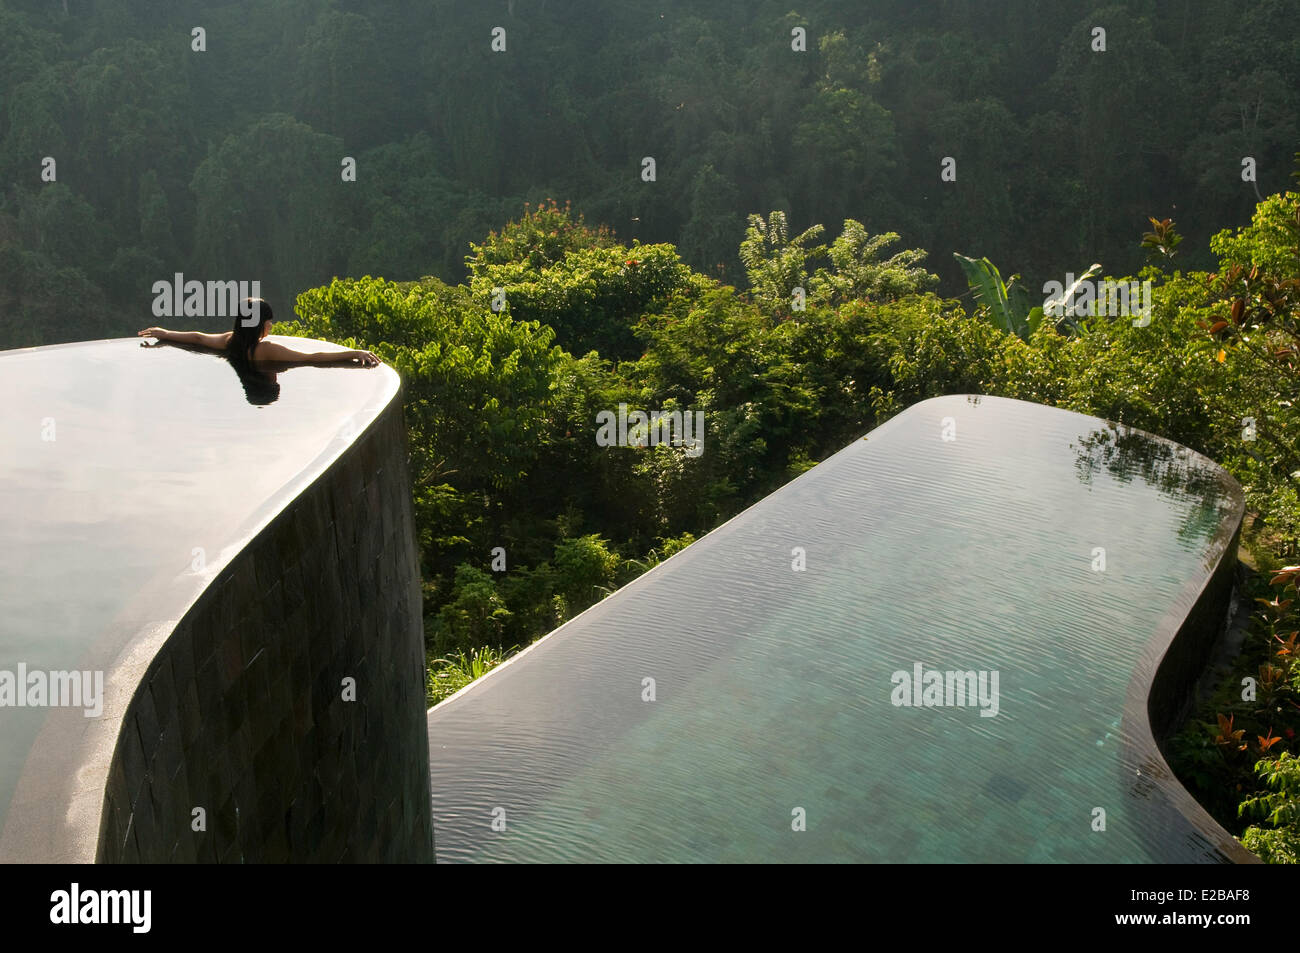 L'INDONÉSIE, Bali, Ubud, Buahan Payangan, Ubud Hanging Gardens hotel group Orient-Express une jeune femme les bras tendus en arrière, d'une piscine à débordement donnant sur la jungle au lever du soleil Banque D'Images